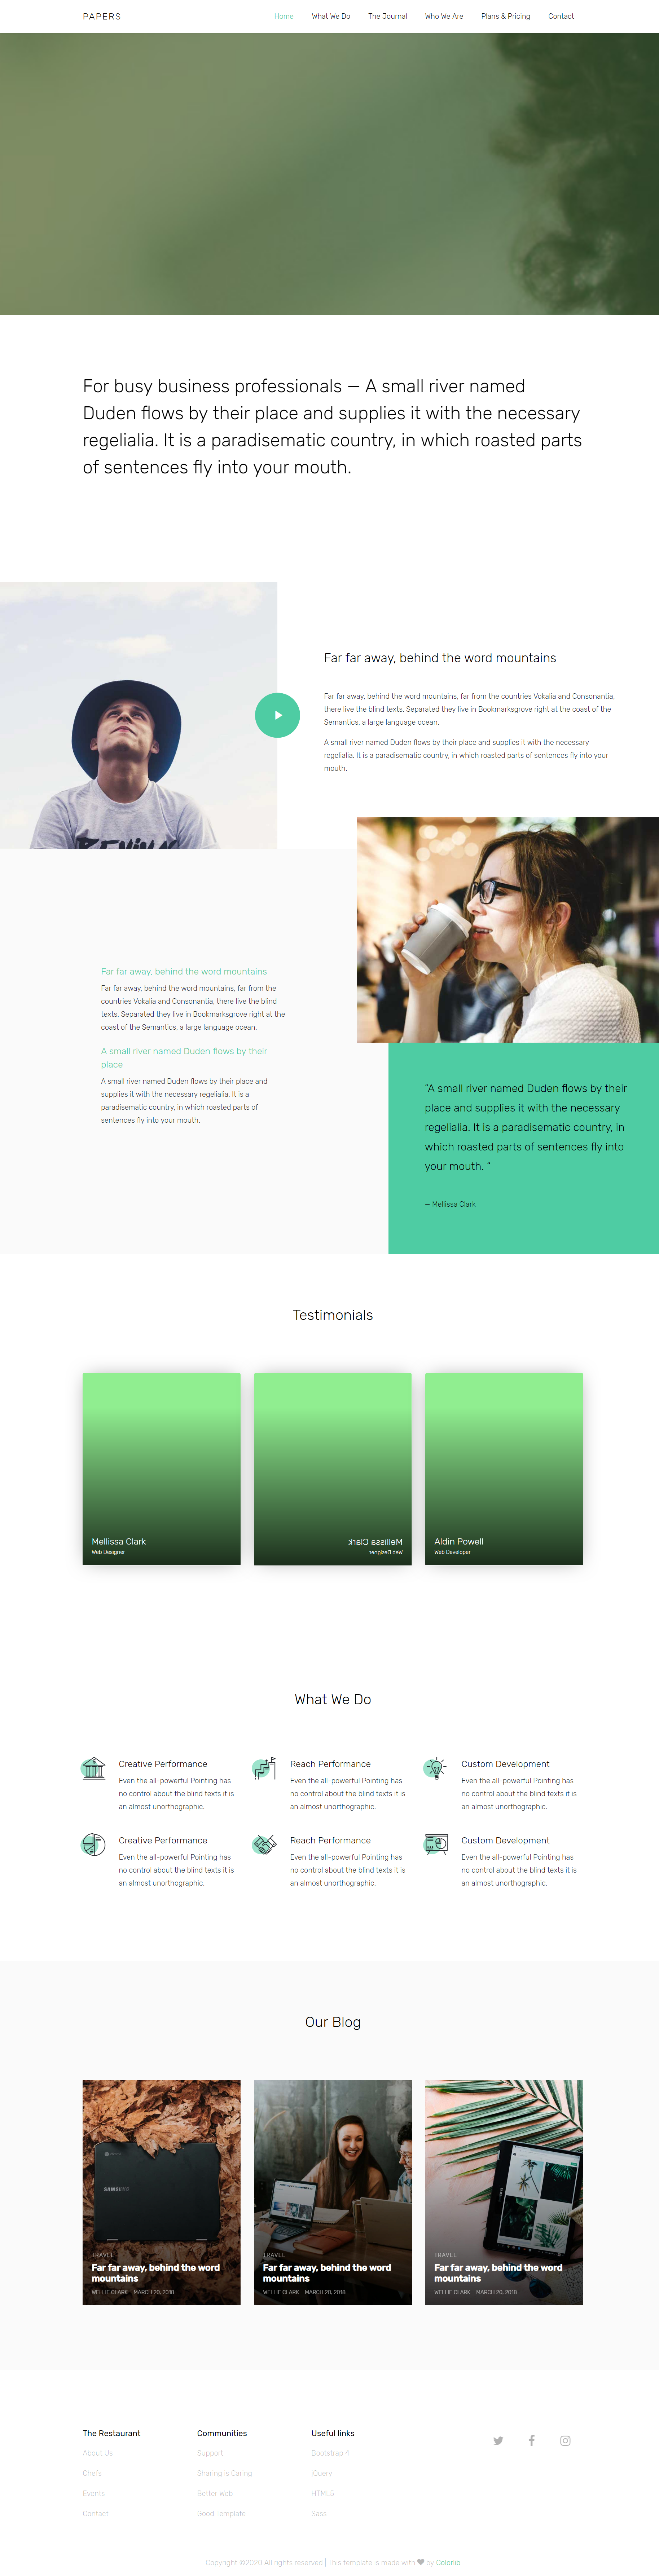 绿色大气风格响应式企业商务网页模板